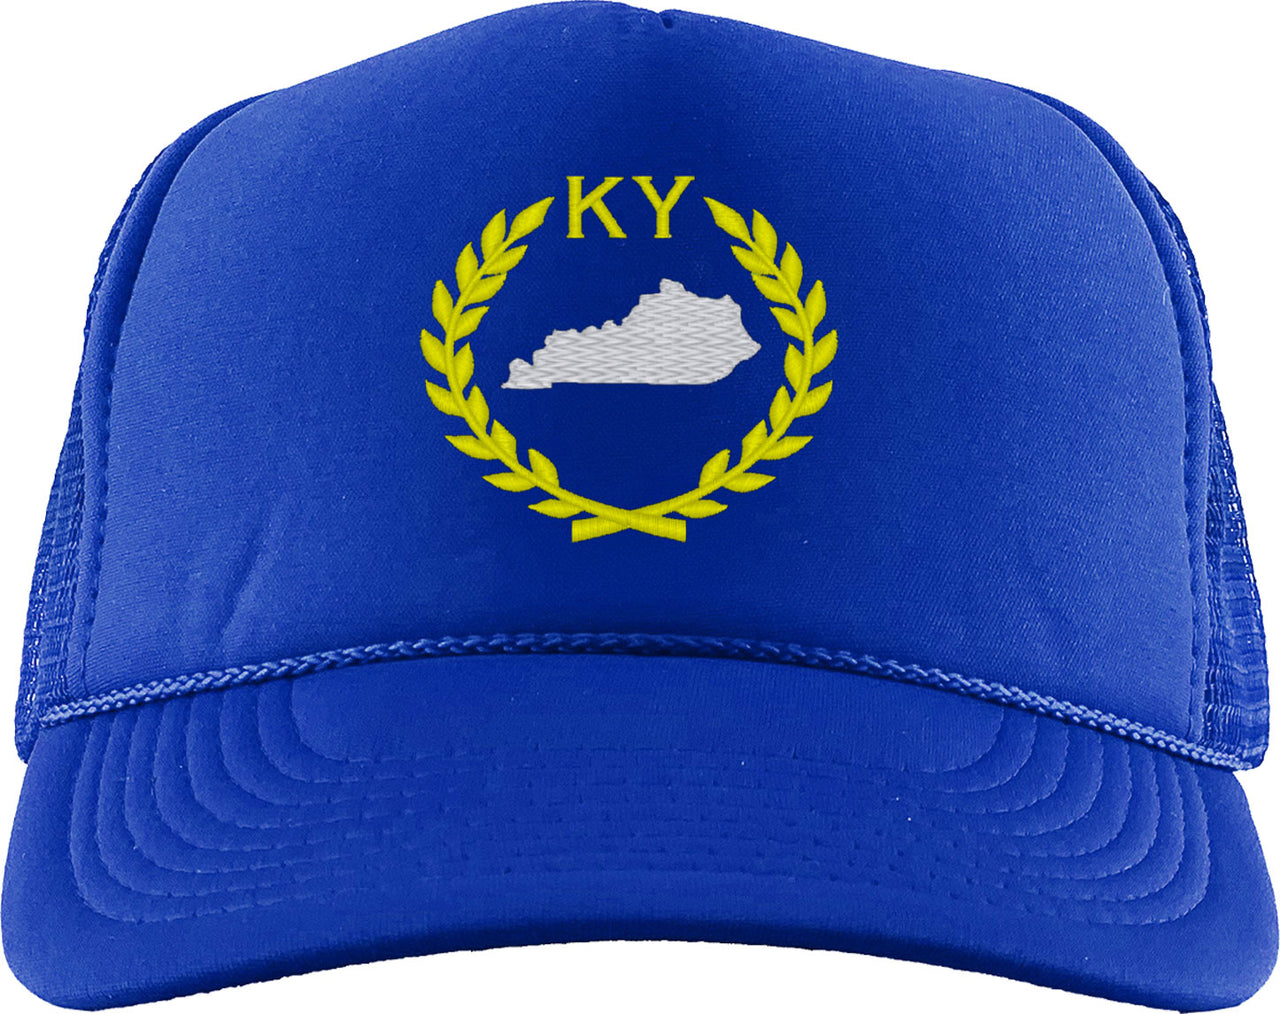 Kentucky State Foam Trucker Hat